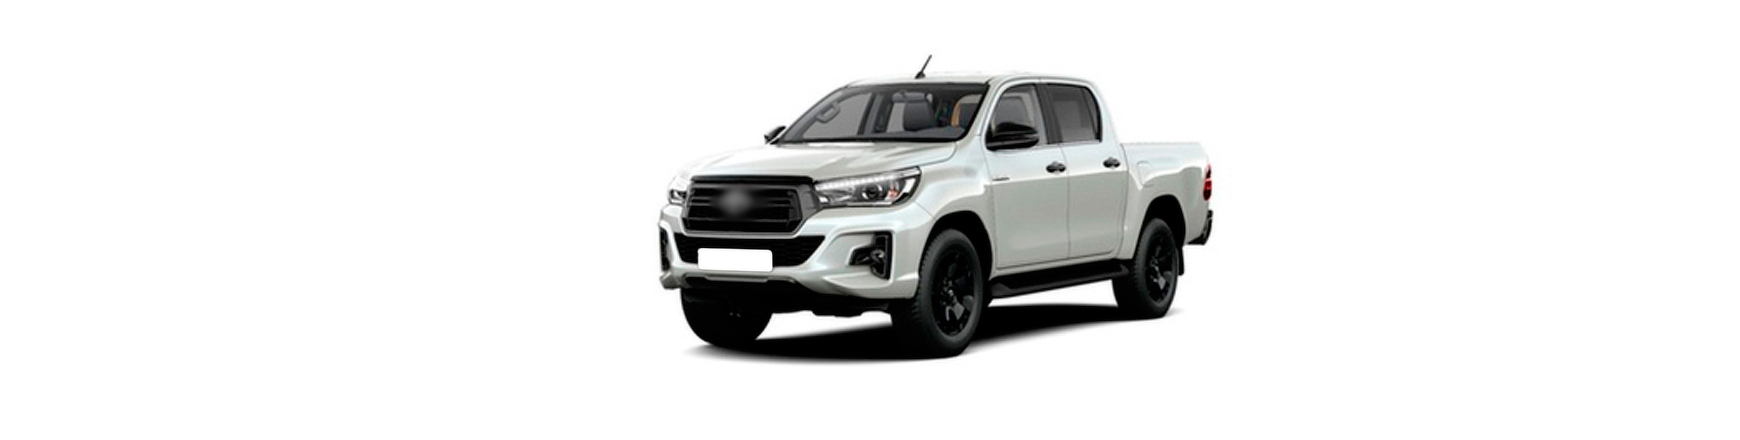 Repuestos de Toyota Hilux VIII (N120) de 2015 a 2020 | Veramauto.es